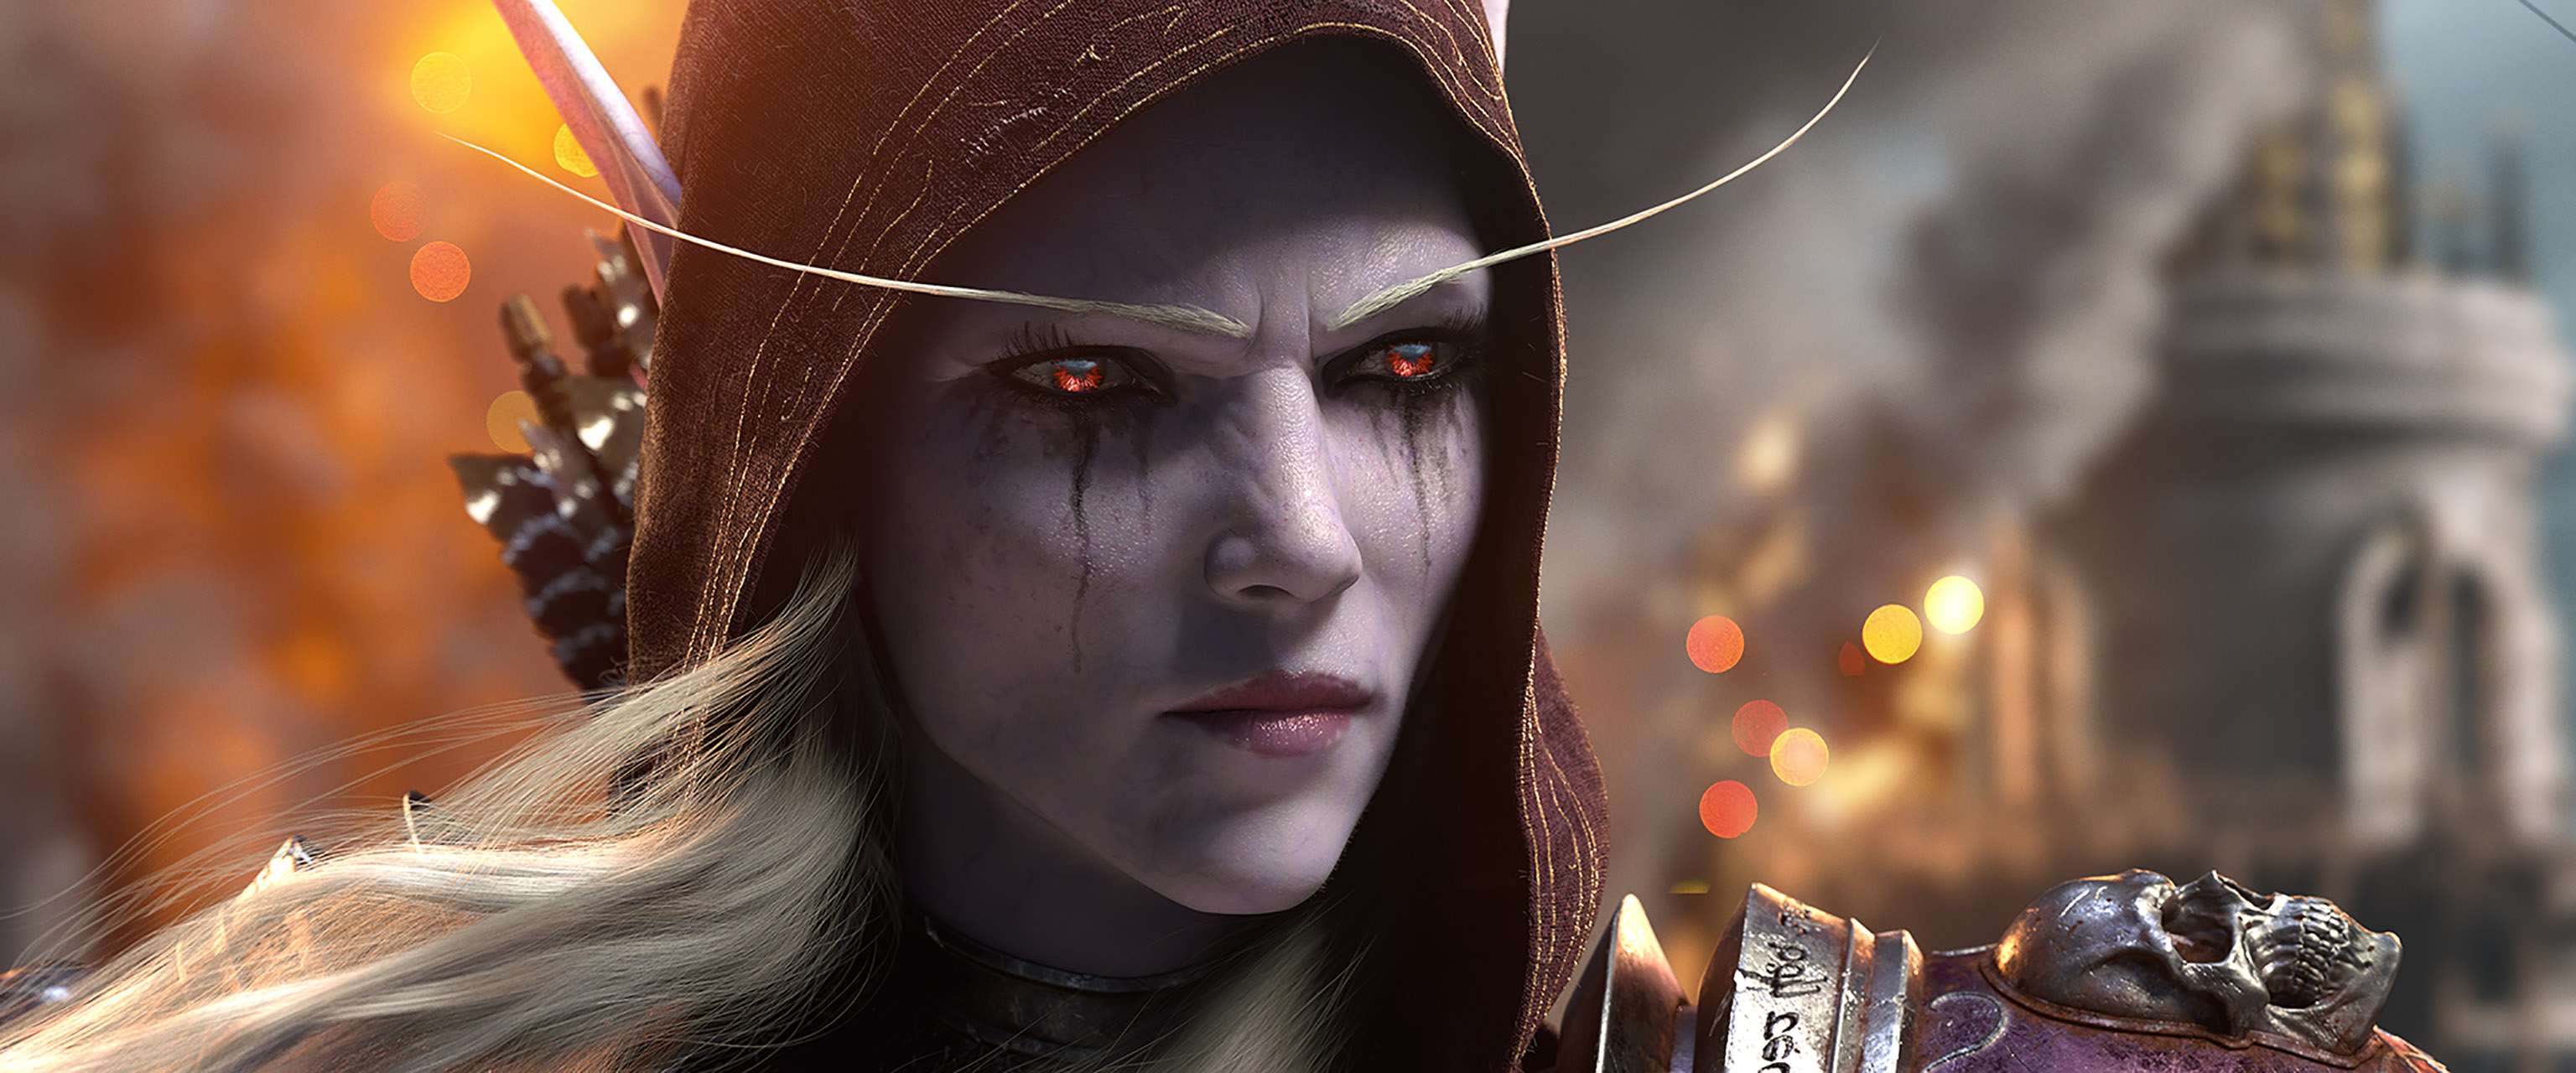 Популярные заставки и фоны Мир Warcraft: Битва За Азерот на компьютер